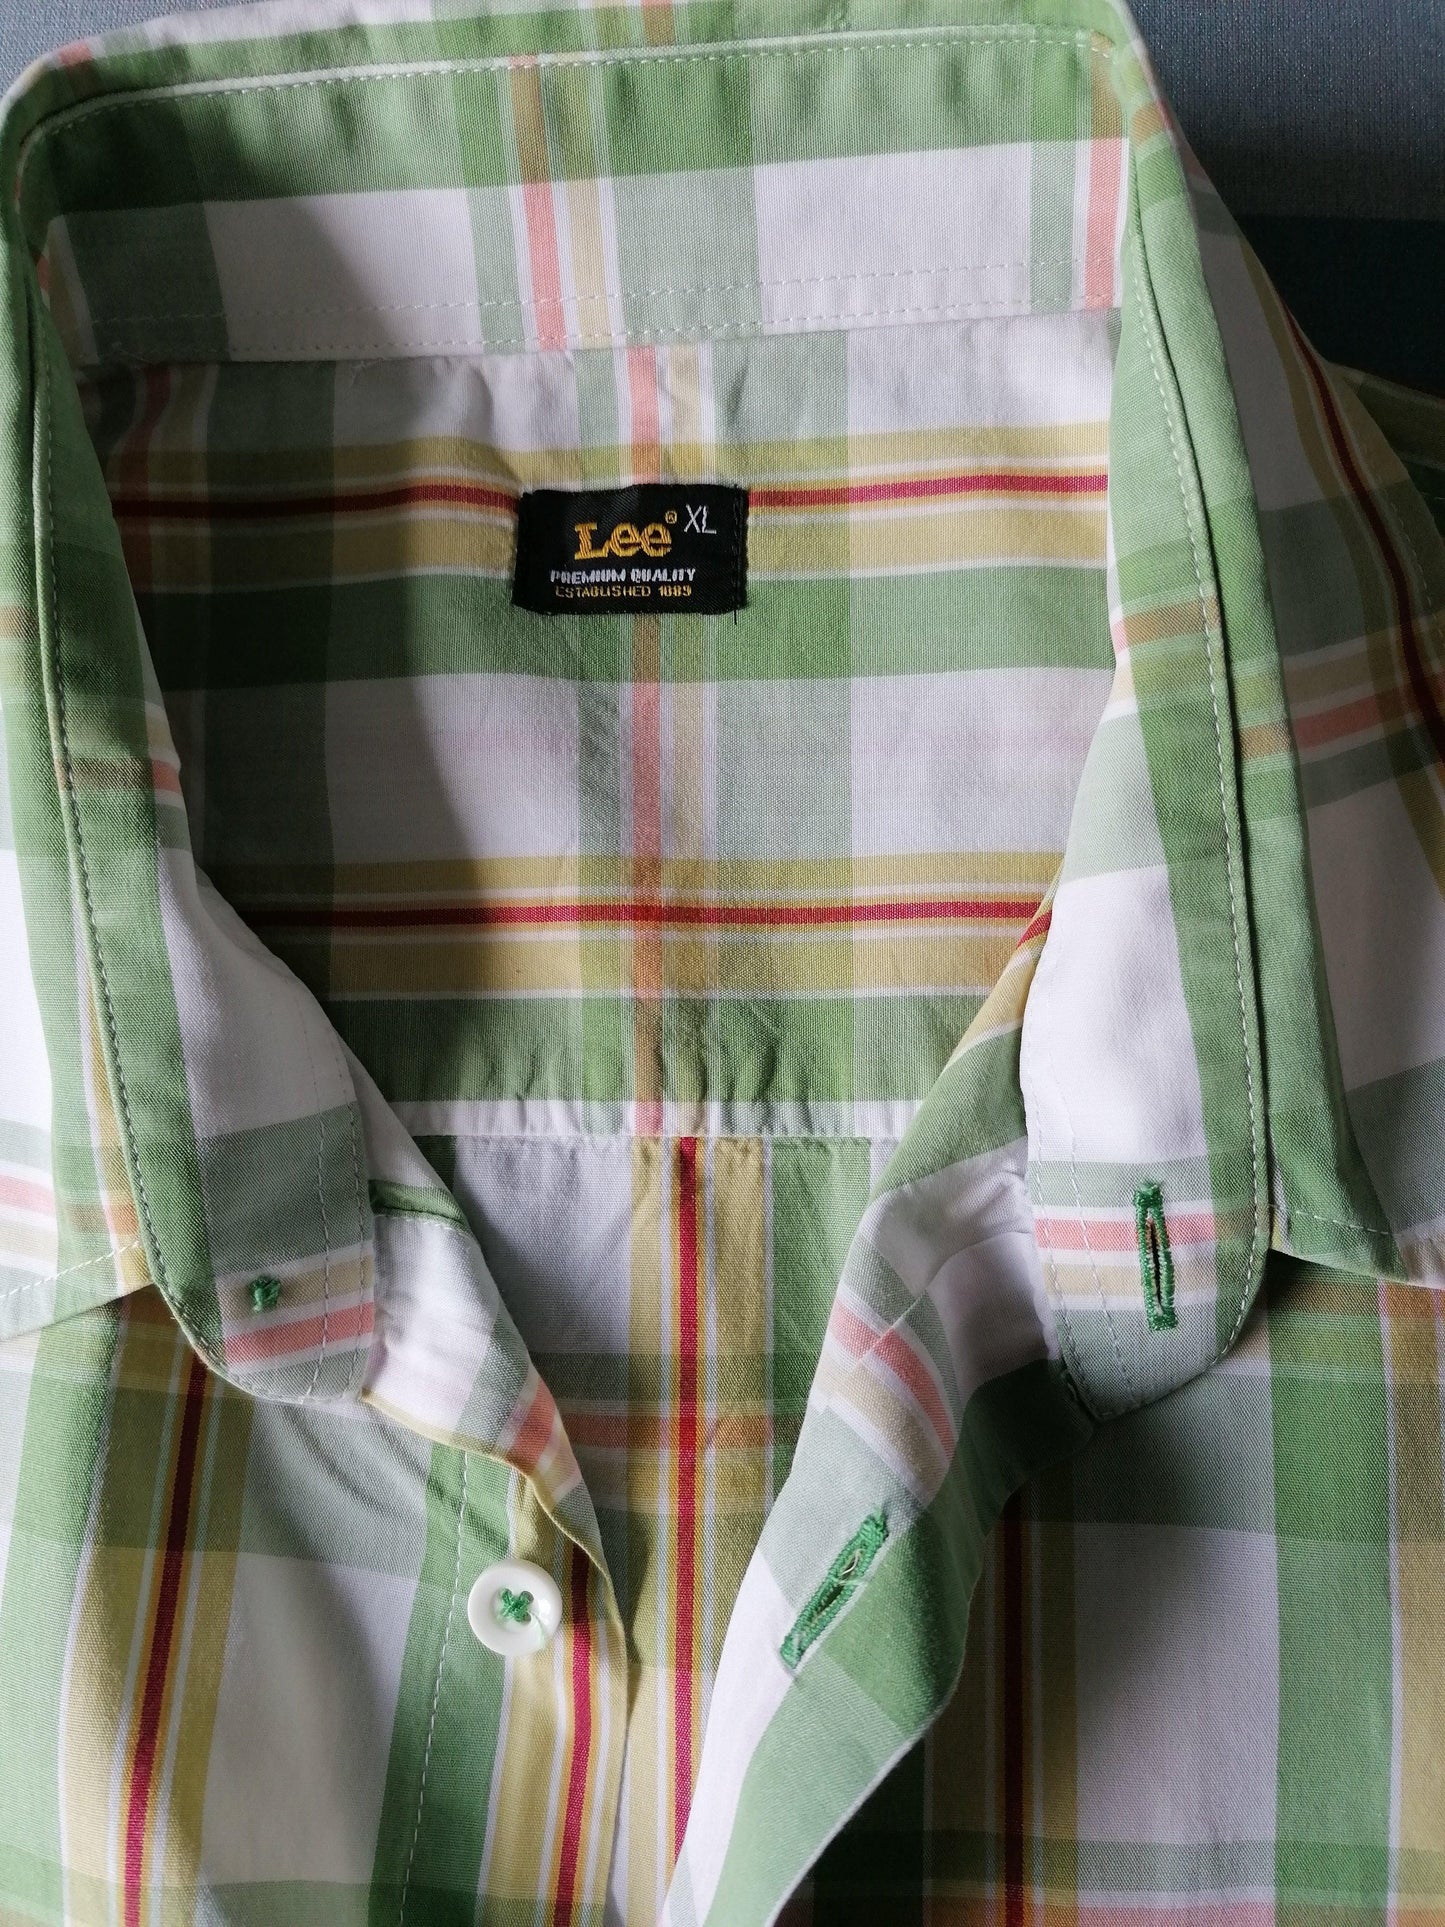 B keus: LEE overhemd korte mouw. Groen. Maat XL. vlekje - EcoGents